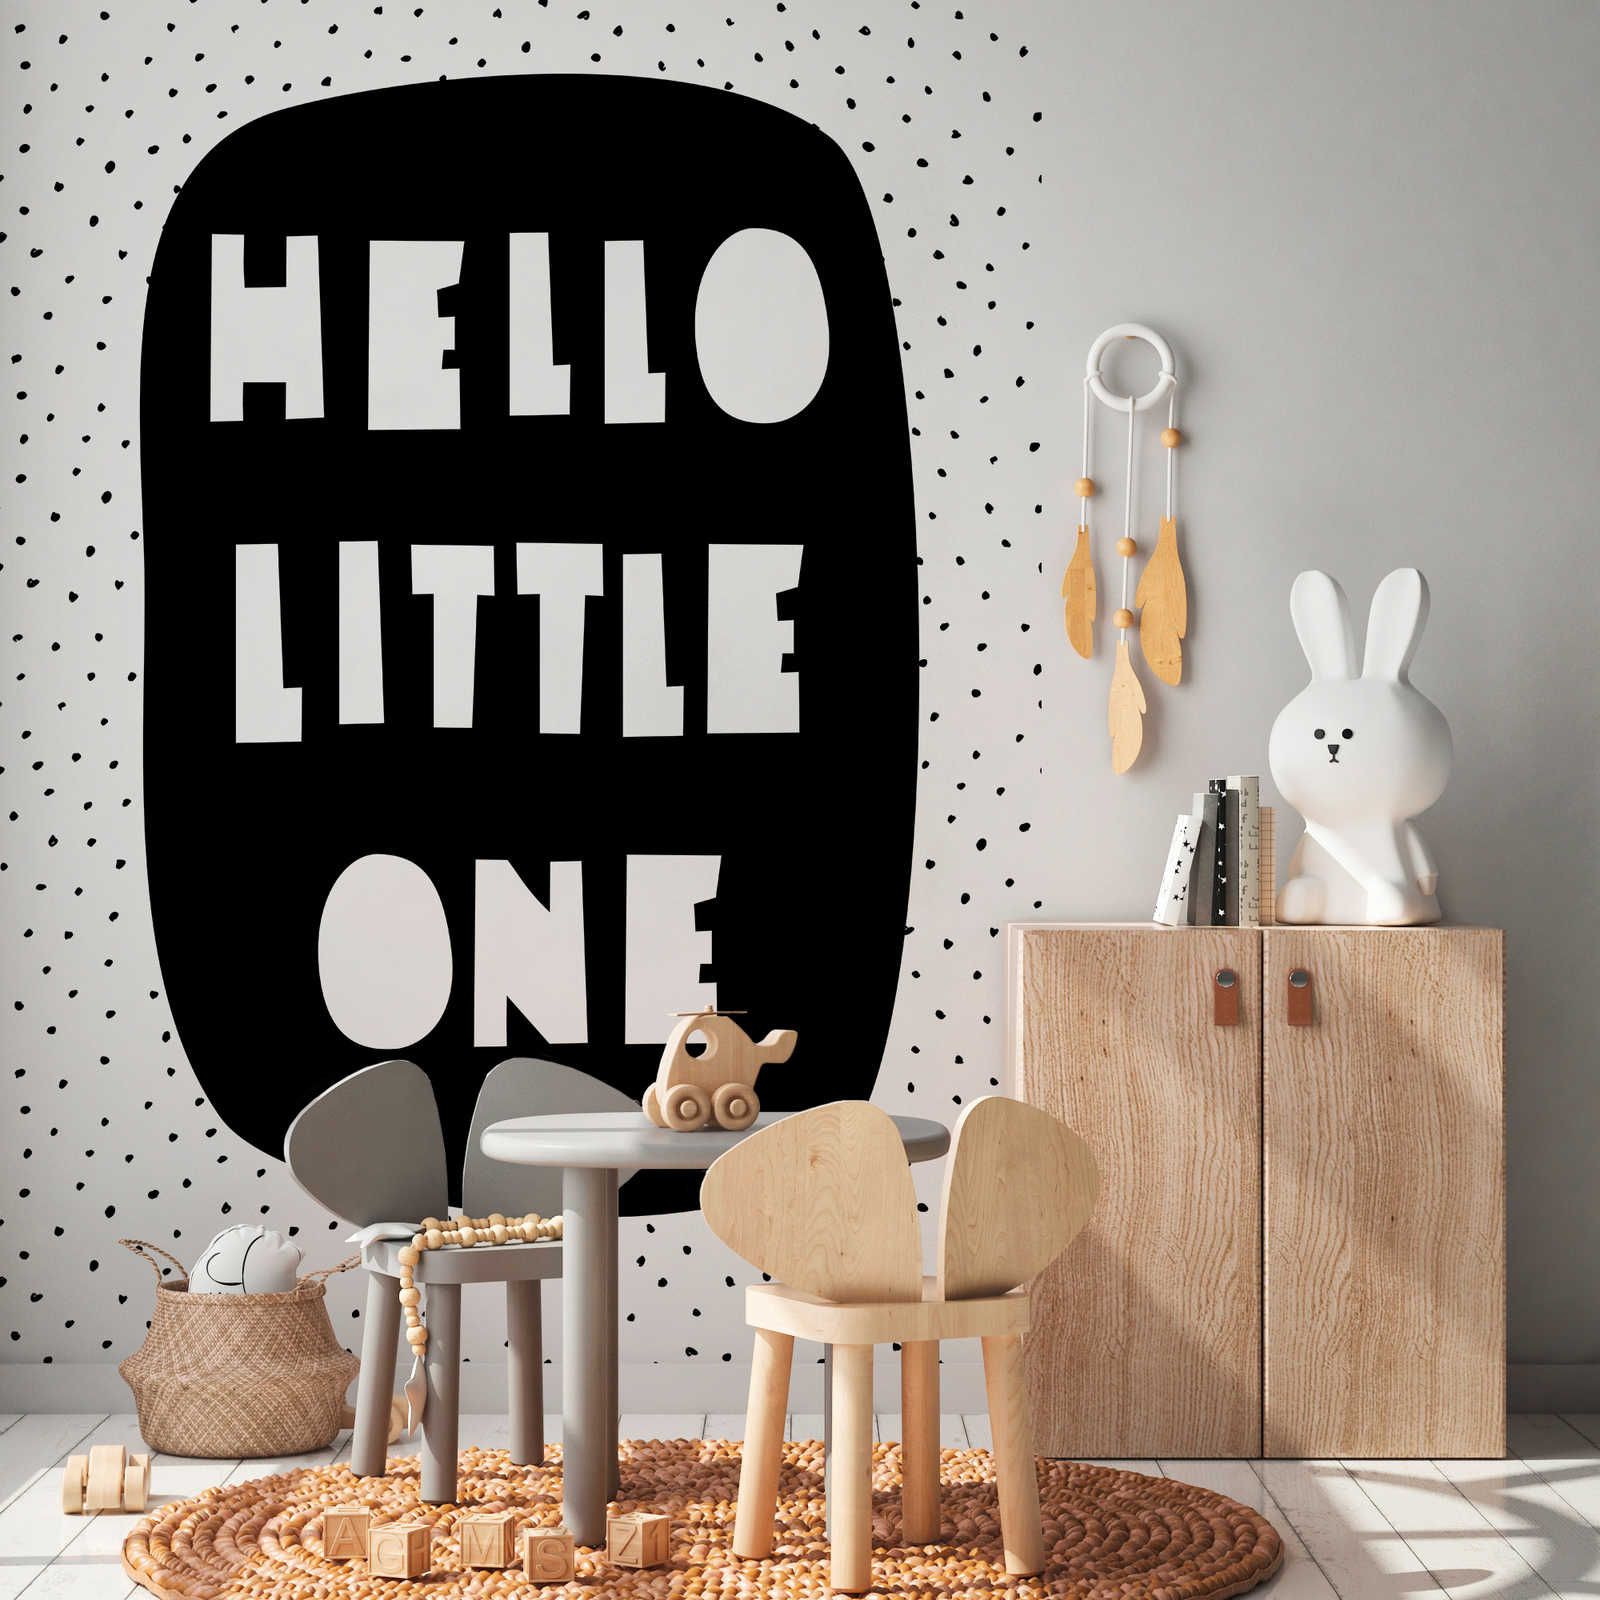 Fototapete fürs Kinderzimmer mit Schriftzug "Hello Little One" – Strukturiertes Vlies
